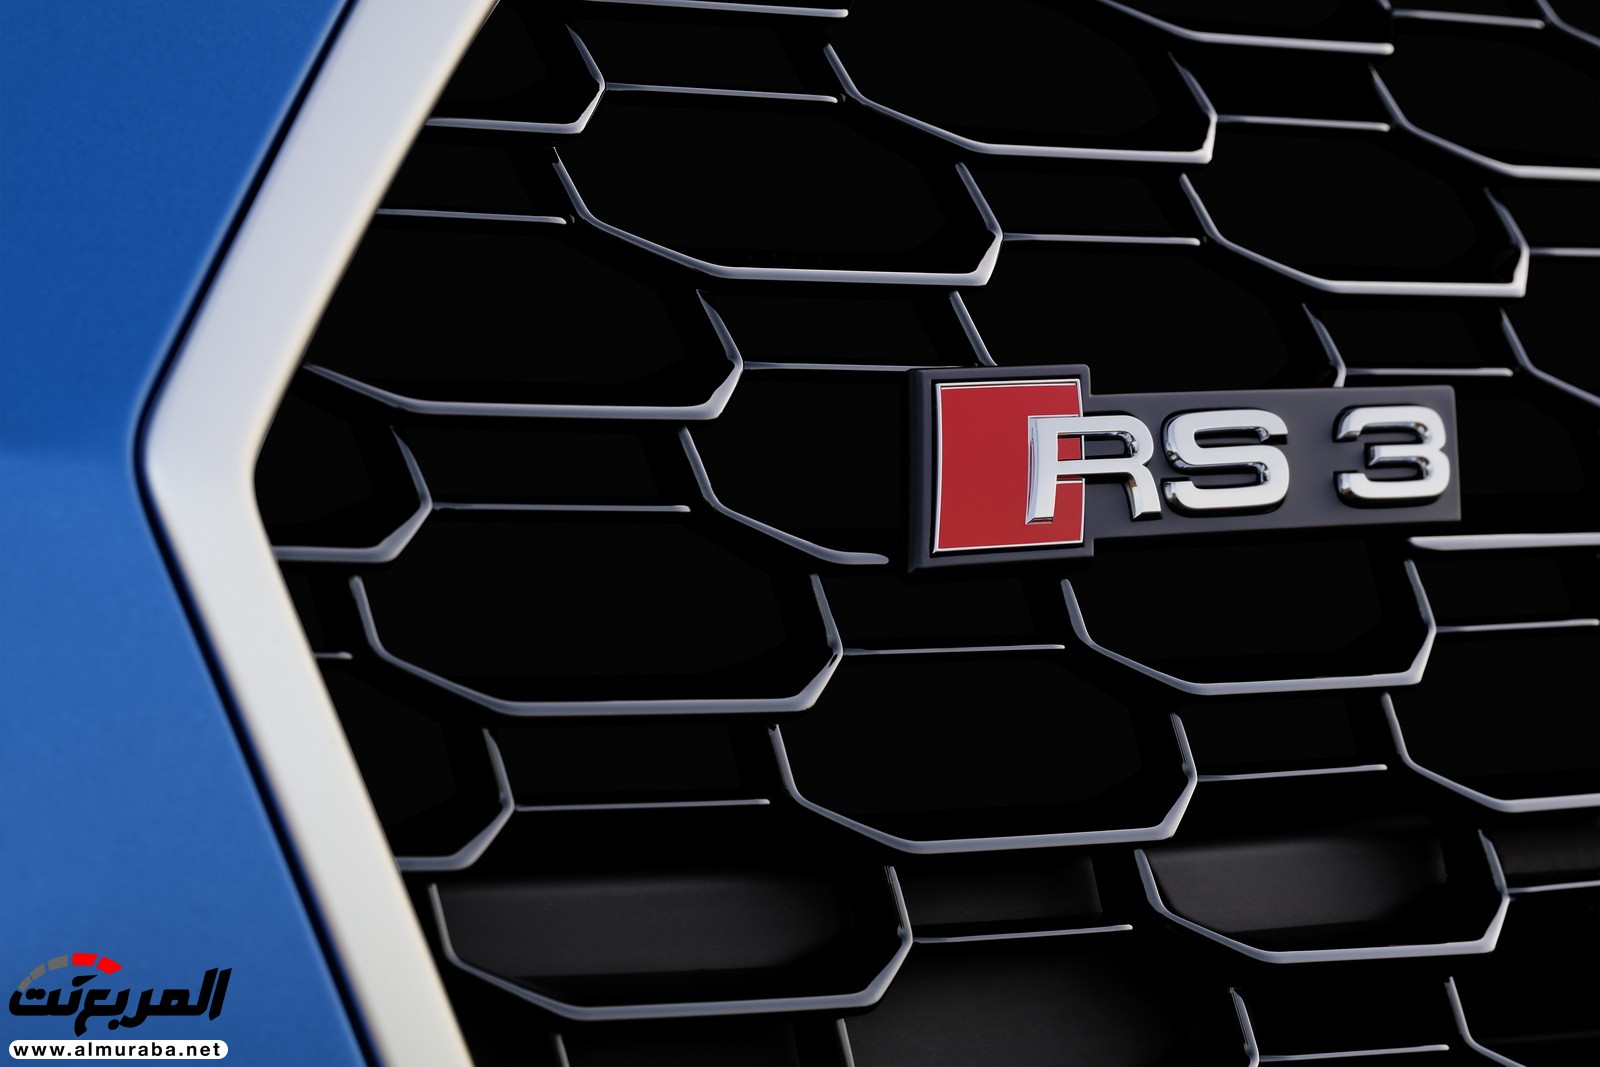 "أودي" تكشف عن RS3 الجديدة كليا 2018 بقوة 395 حصان Audi 16